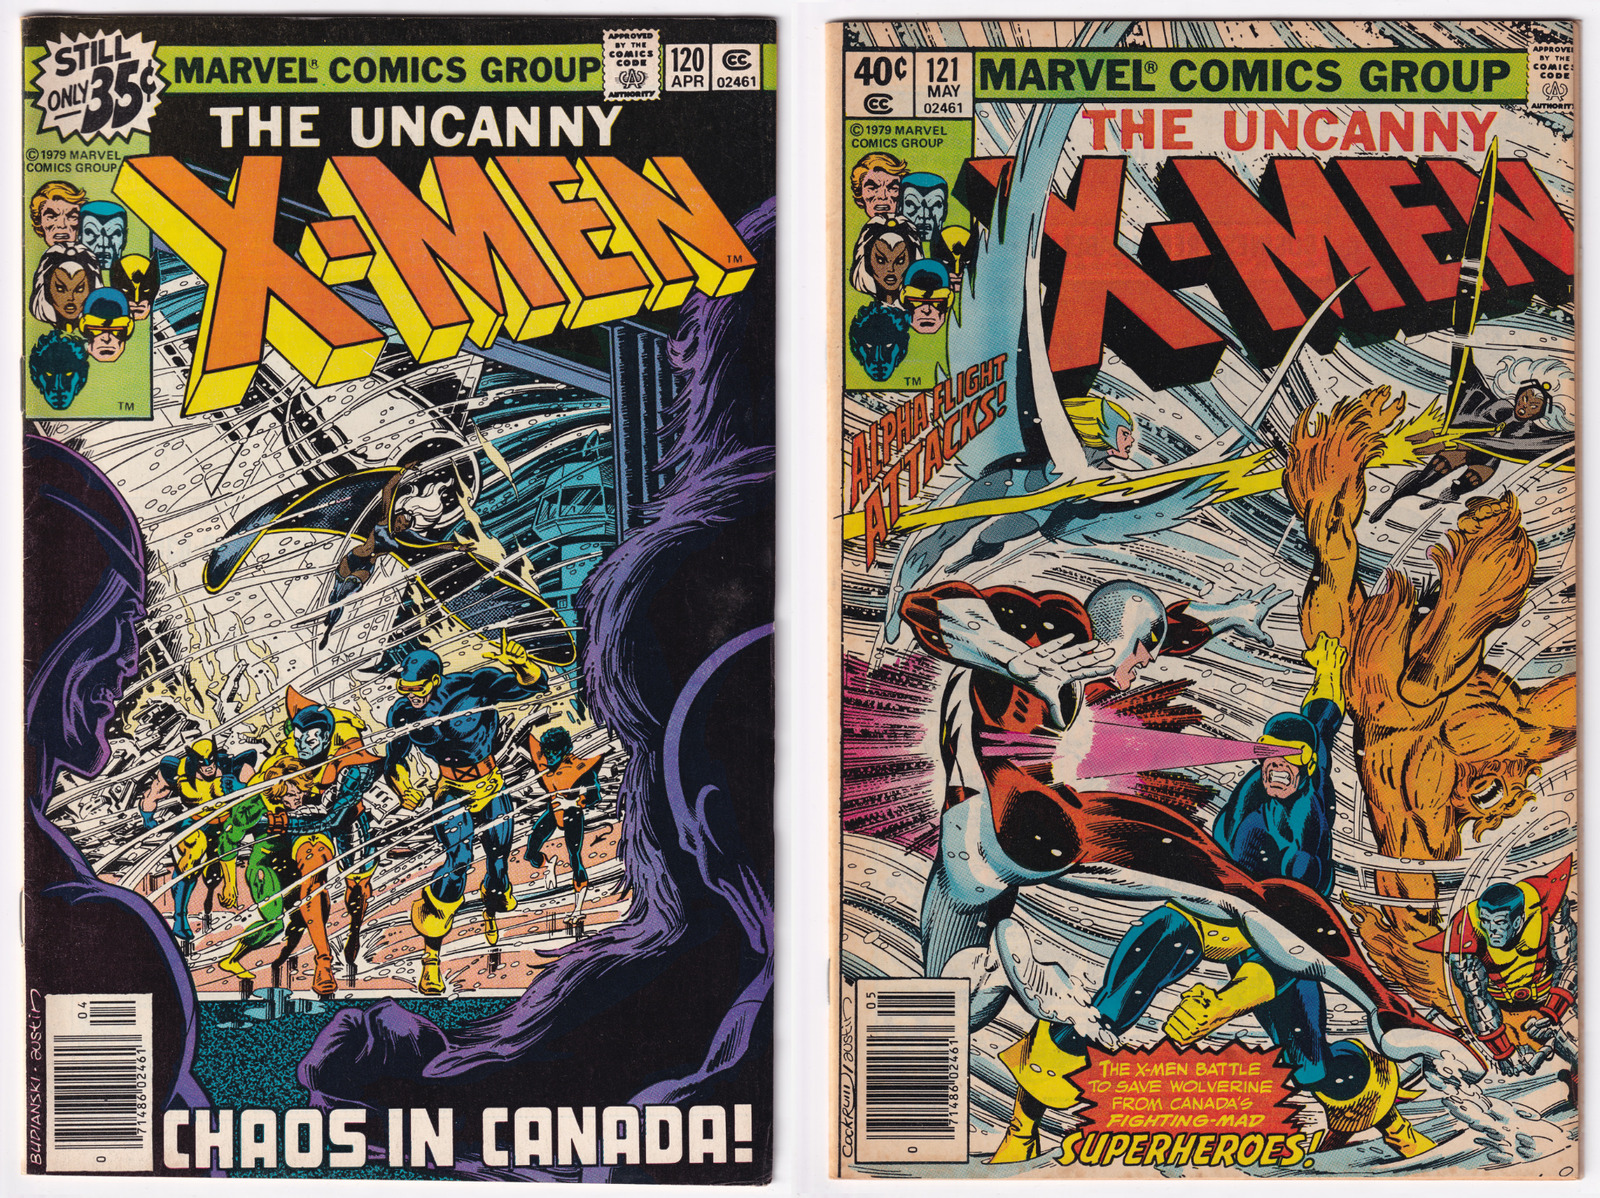 Uncanny X-Men LOT (2) # 120 & 121 Marvel Comic Book First App Alpha Flight - A